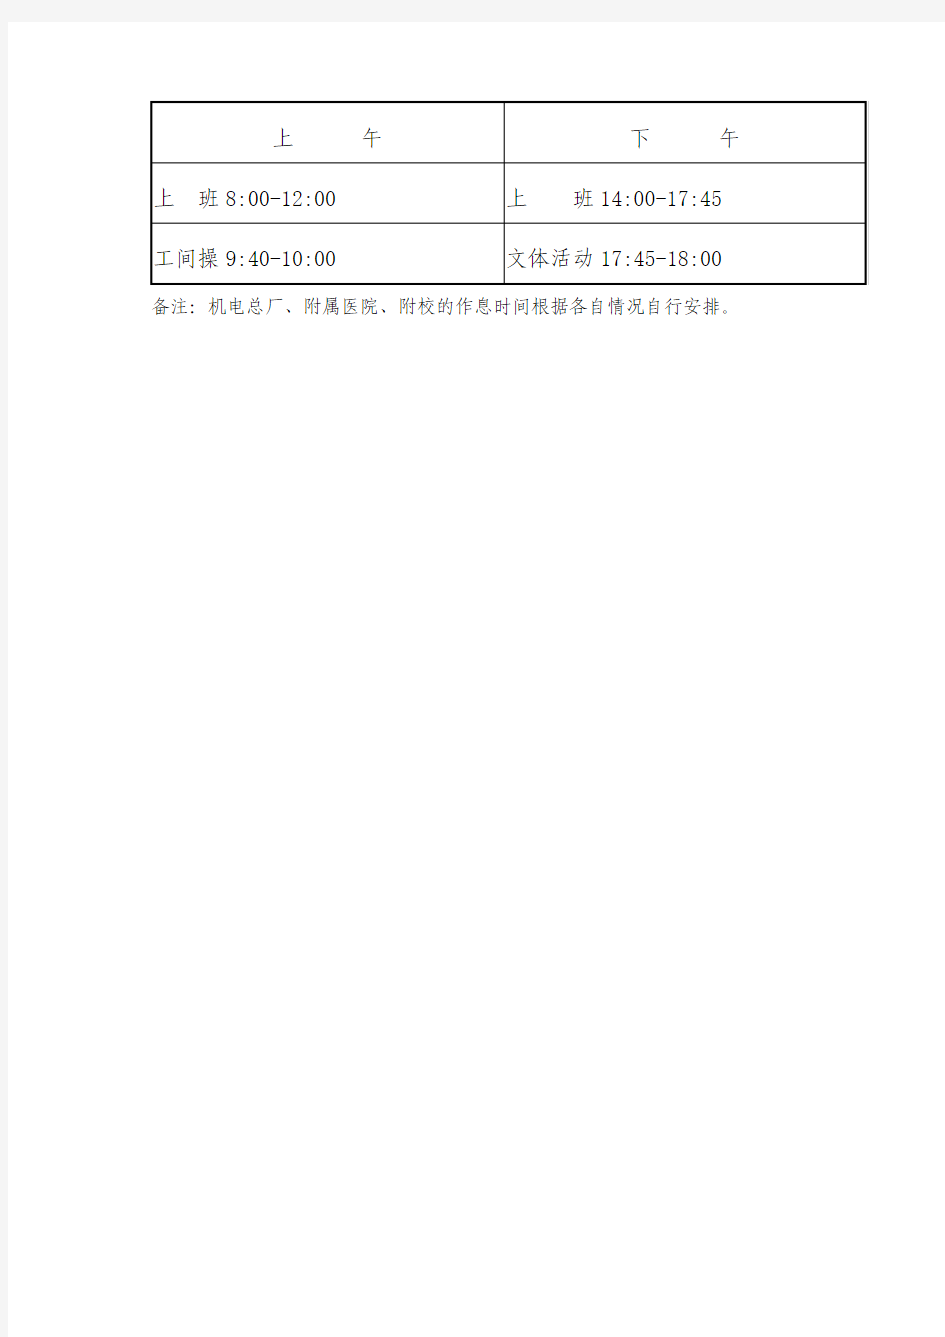 江 苏 大 学 作 息 时 间 表